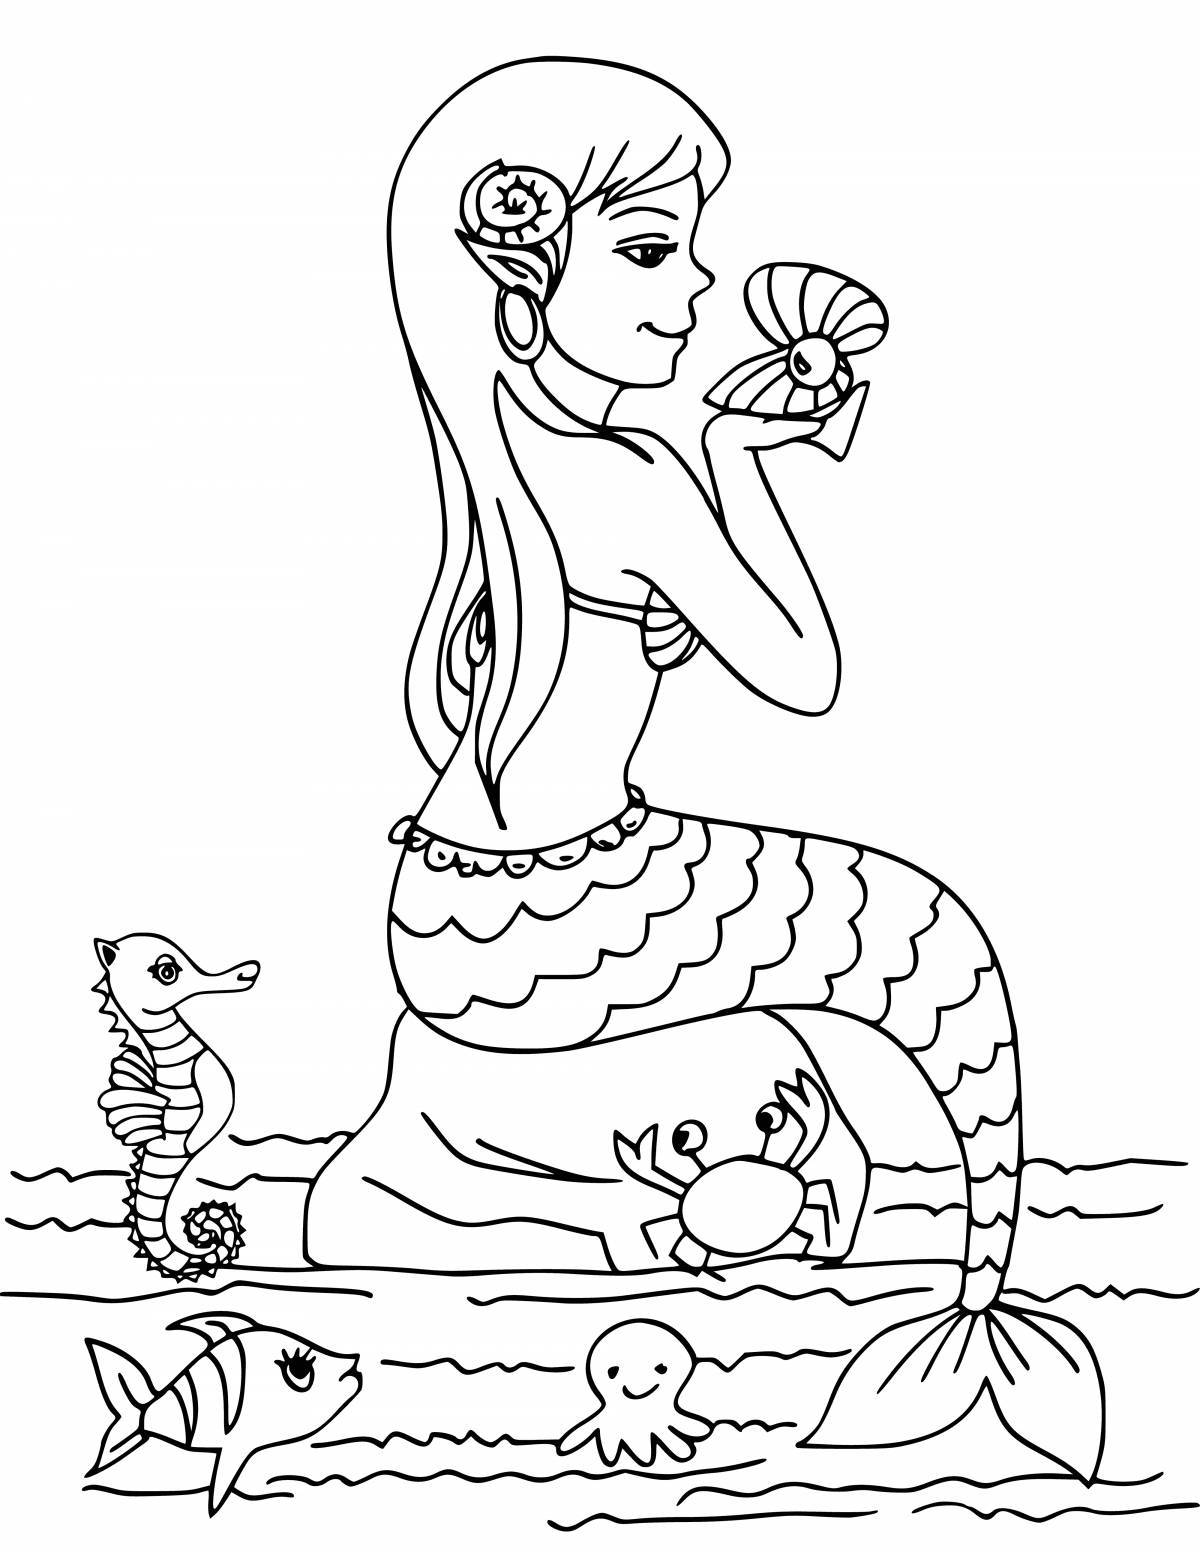 Fancy mermaid coloring book for kids